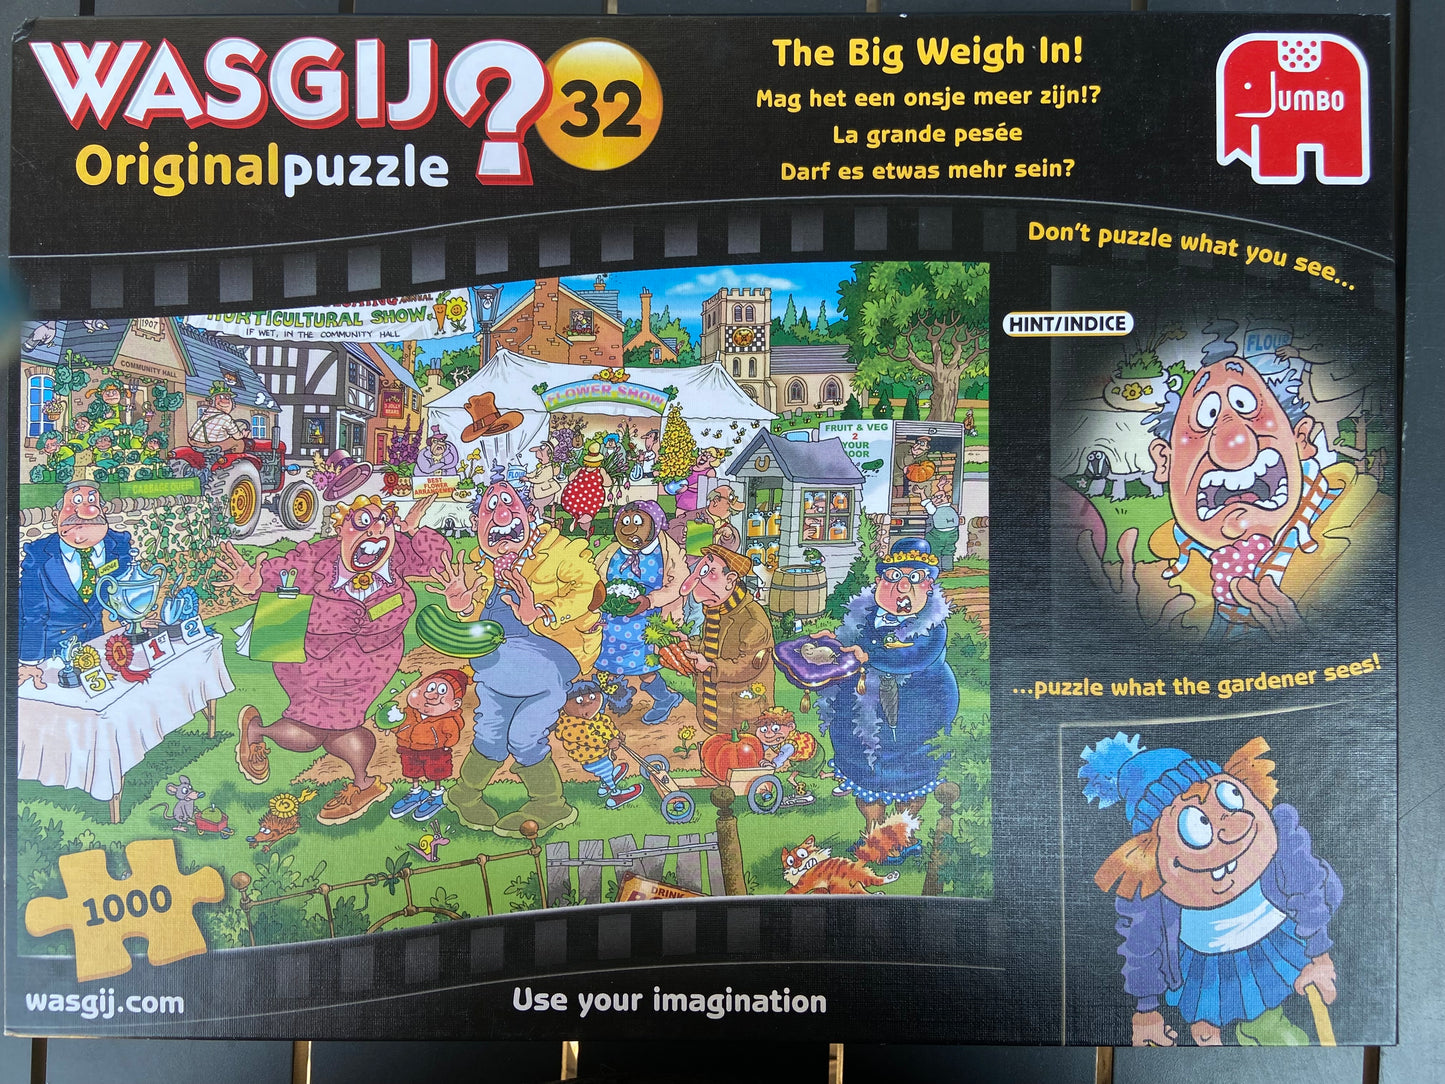 Wasgij 32 Original Puzzle - The Big Way In